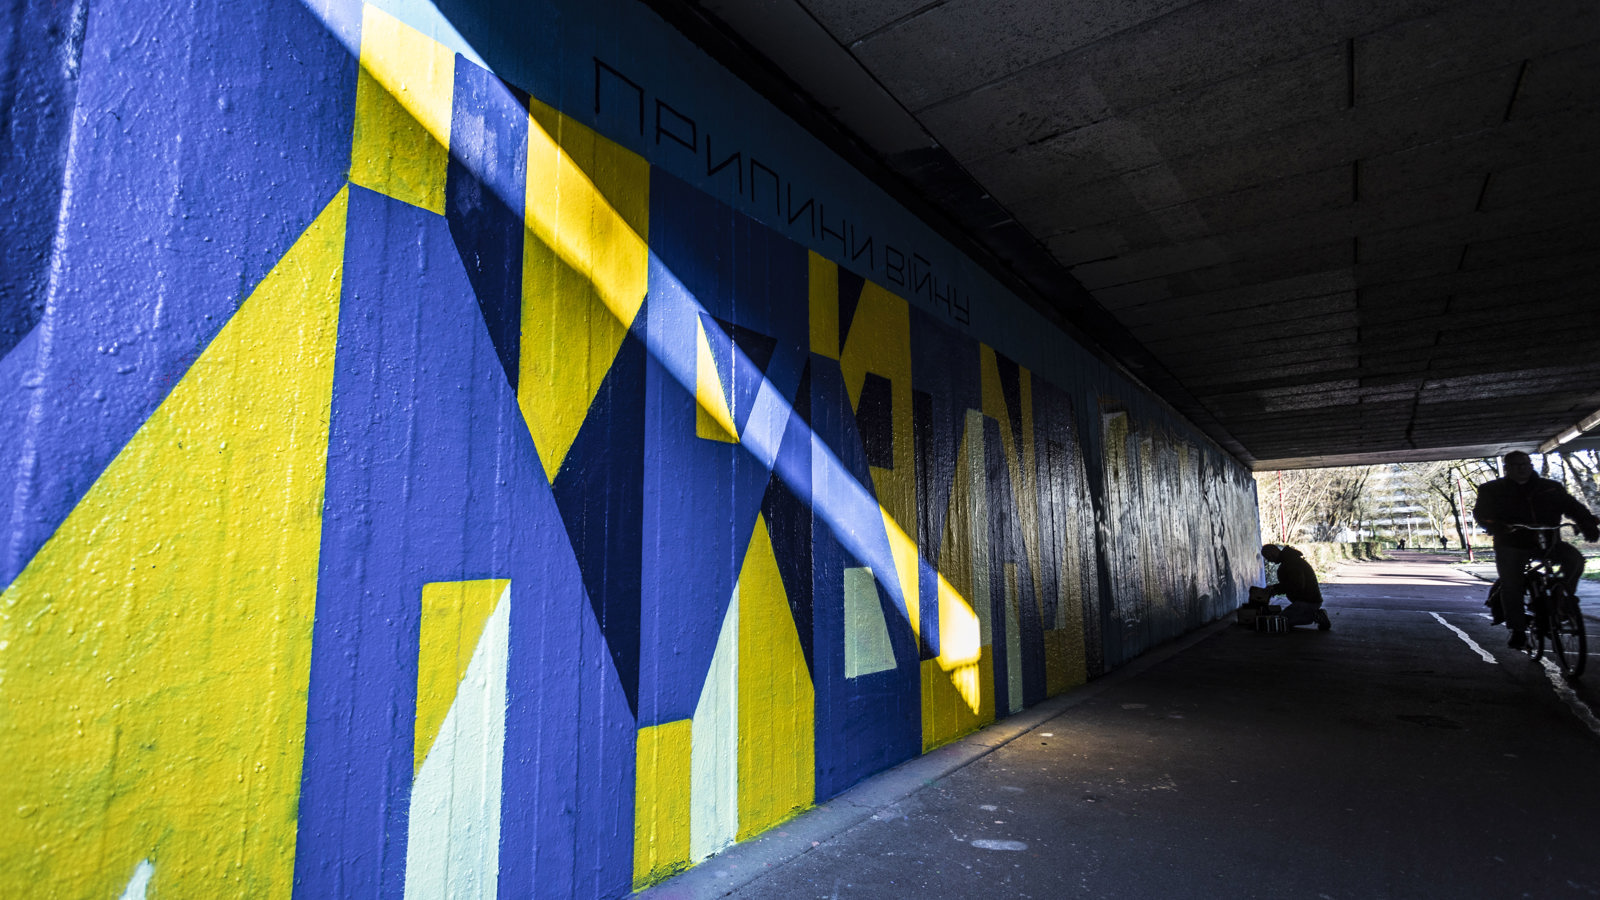 Straatkunst (legale graffiti muur) met de kleuren blauw en geel om aandacht te vragen voor de oorlog in Oekraïne